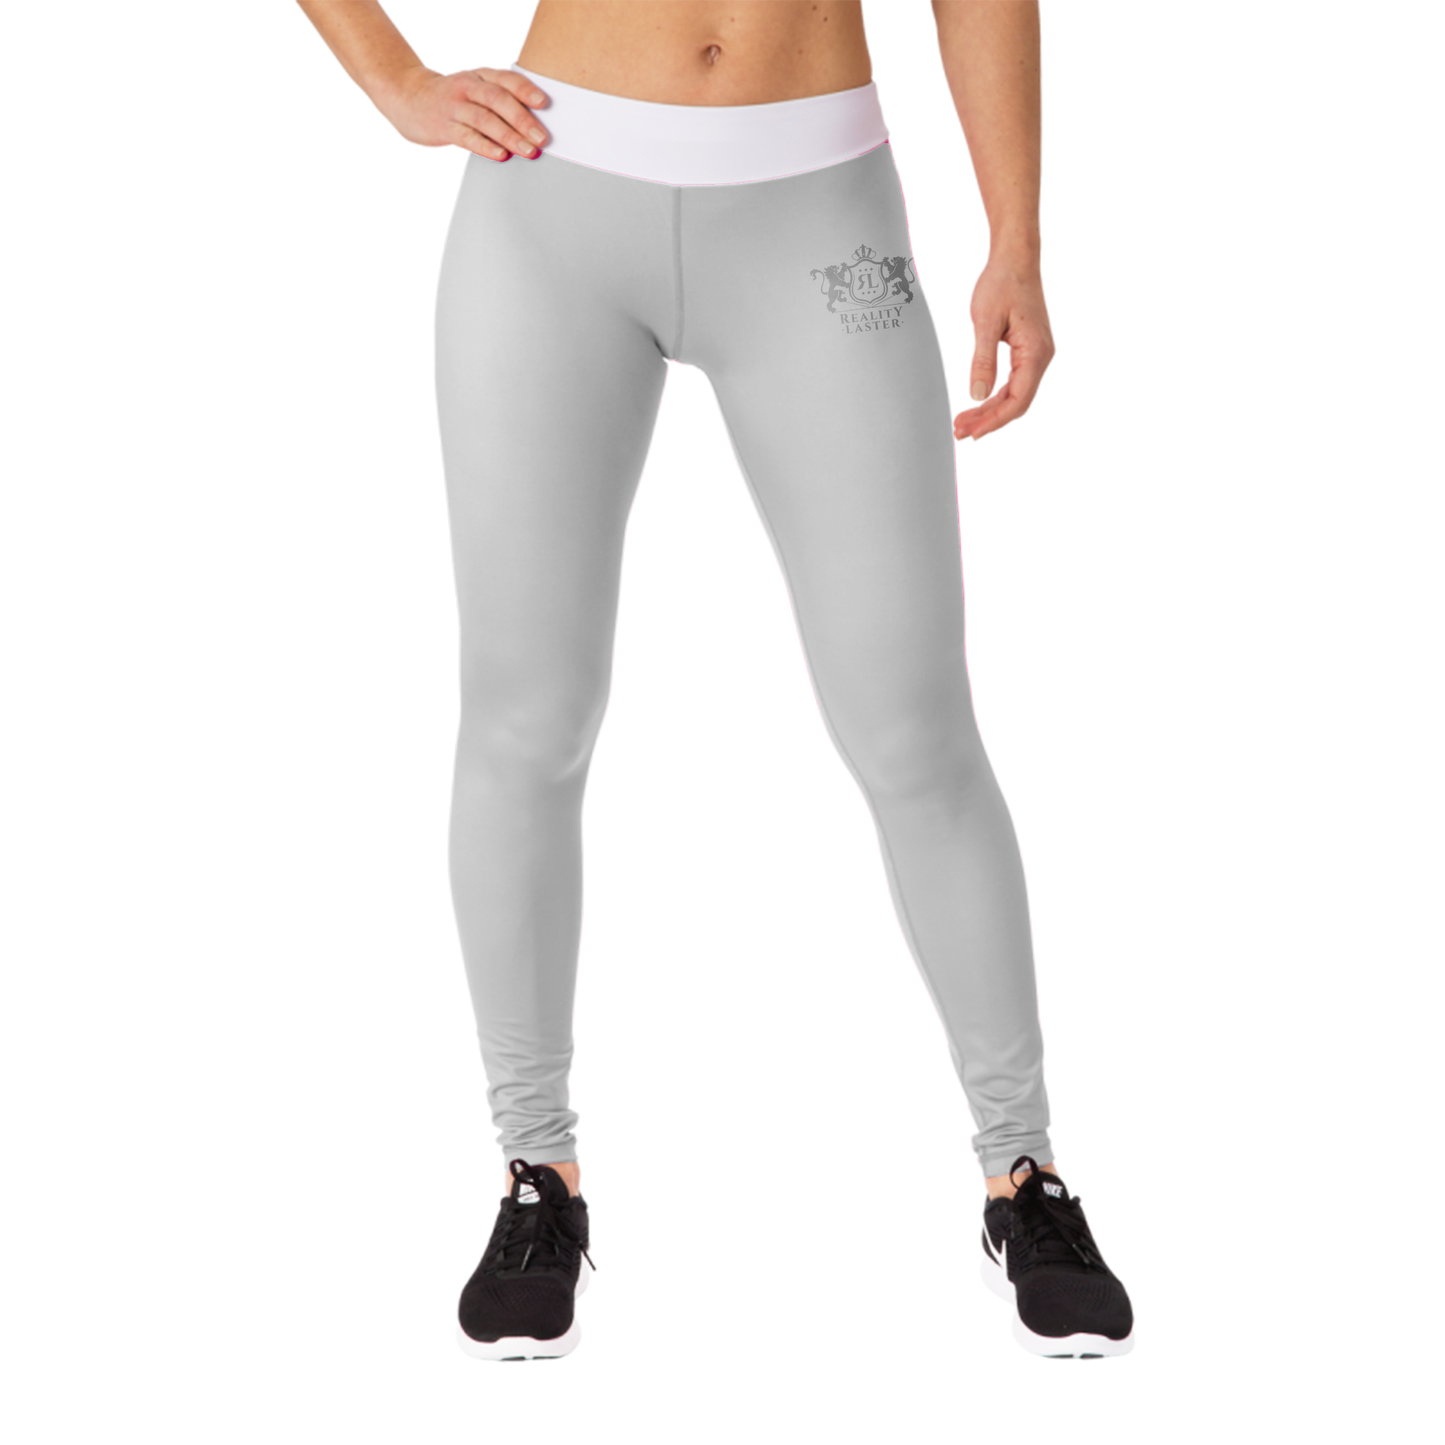 Women's White Yoga pants